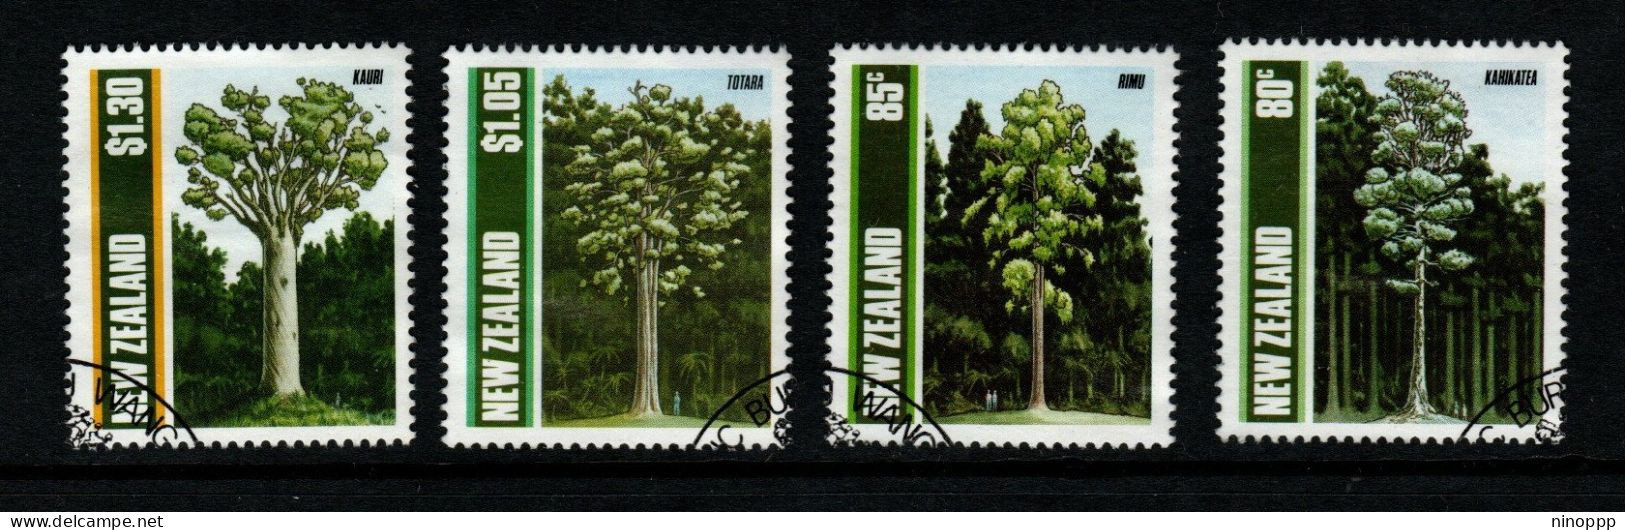 New Zealand SG 1511-14  1989 Trees,used - Usati